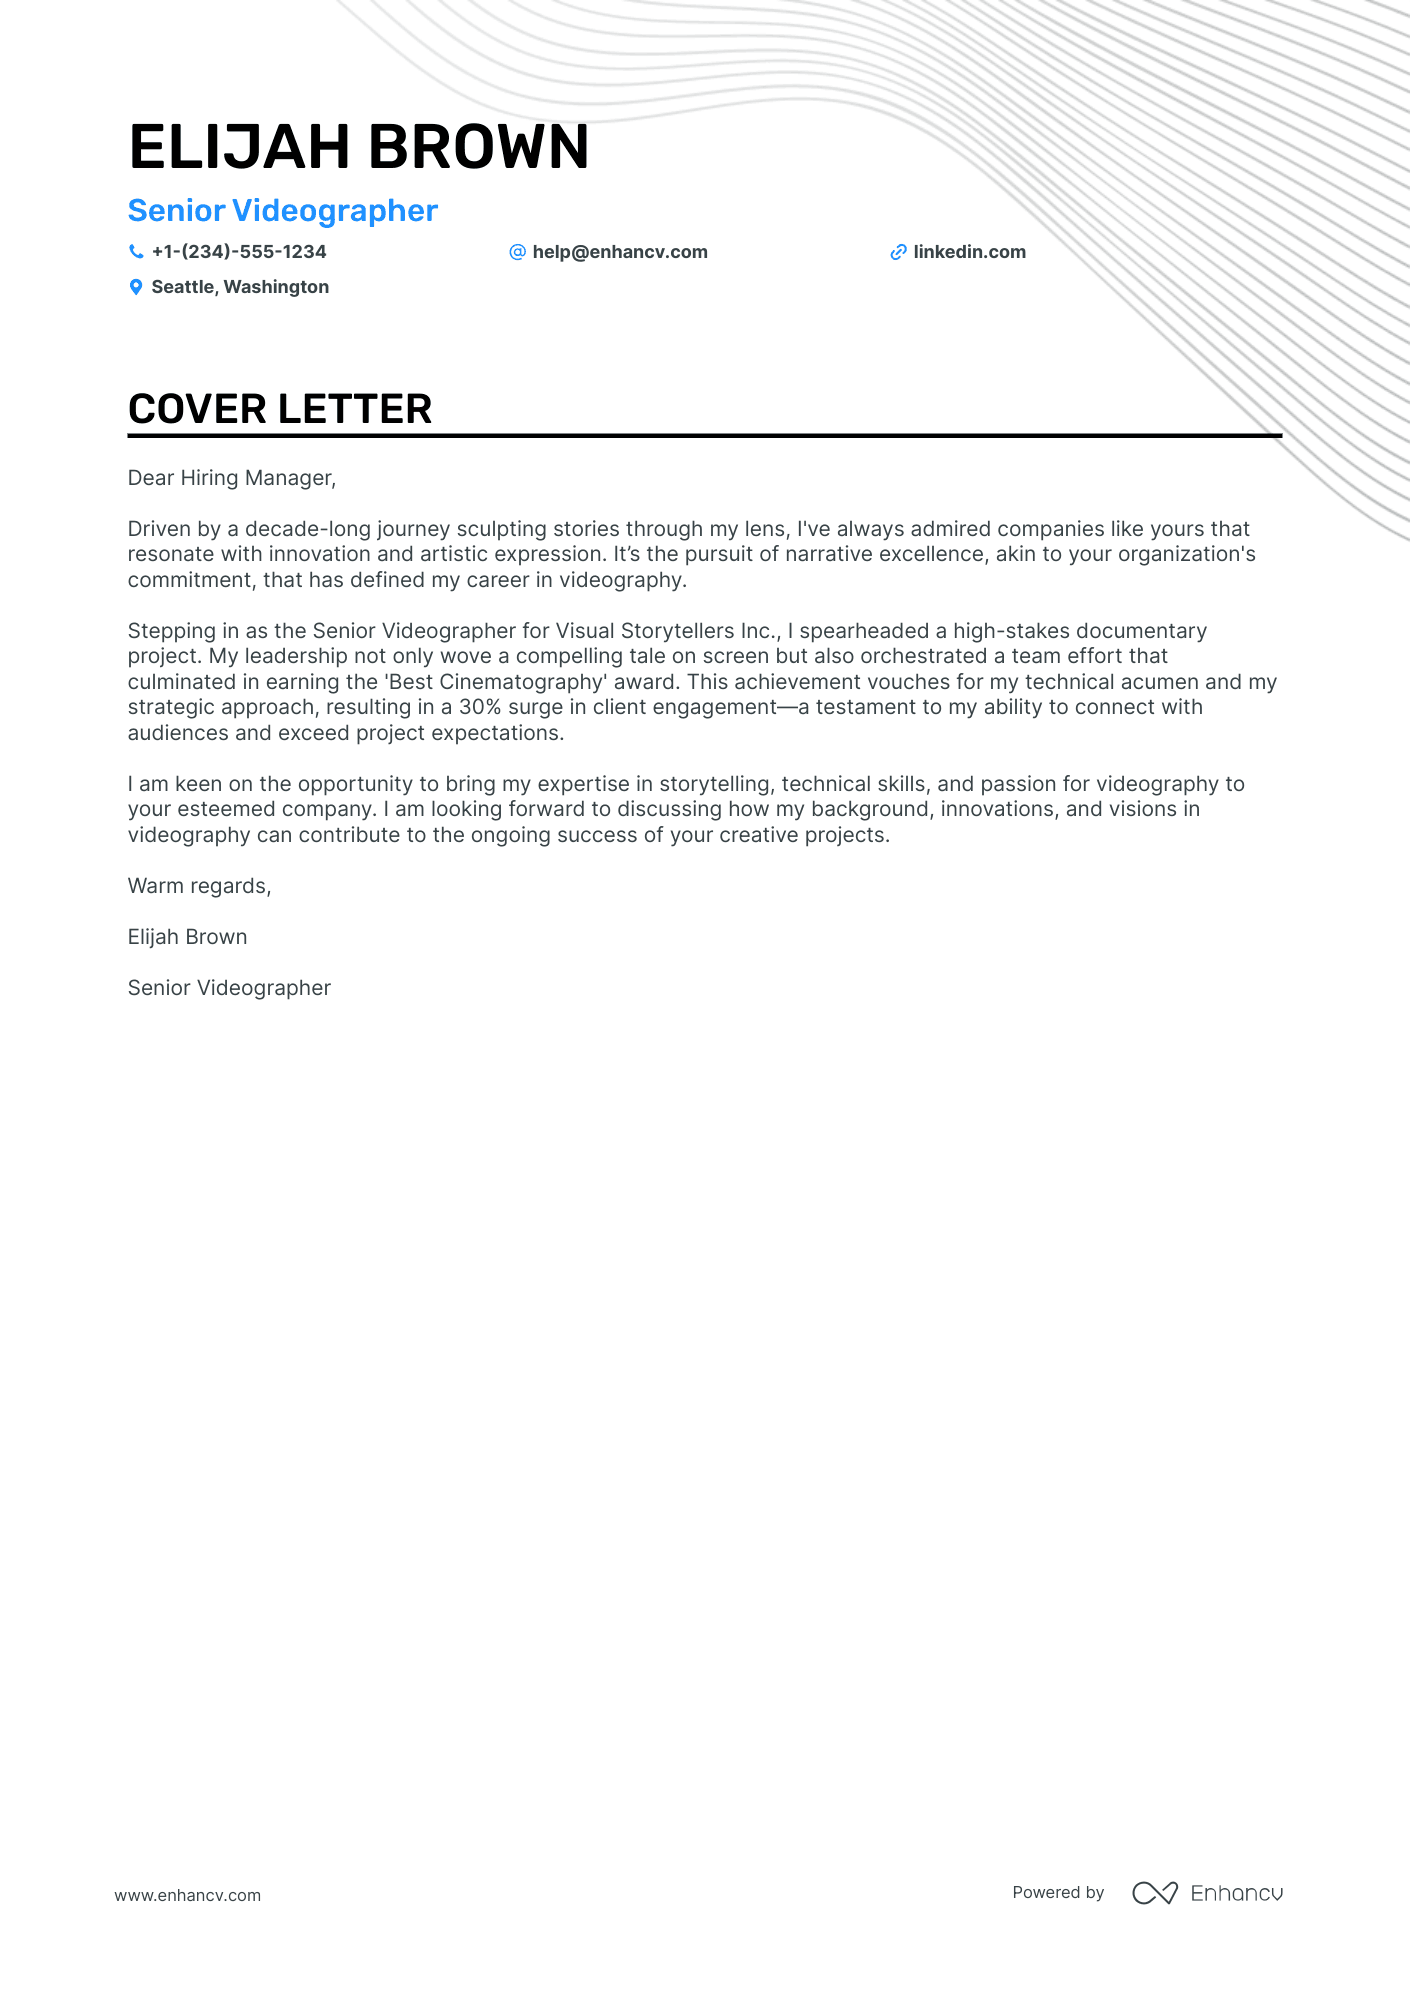 jobadder video cover letter